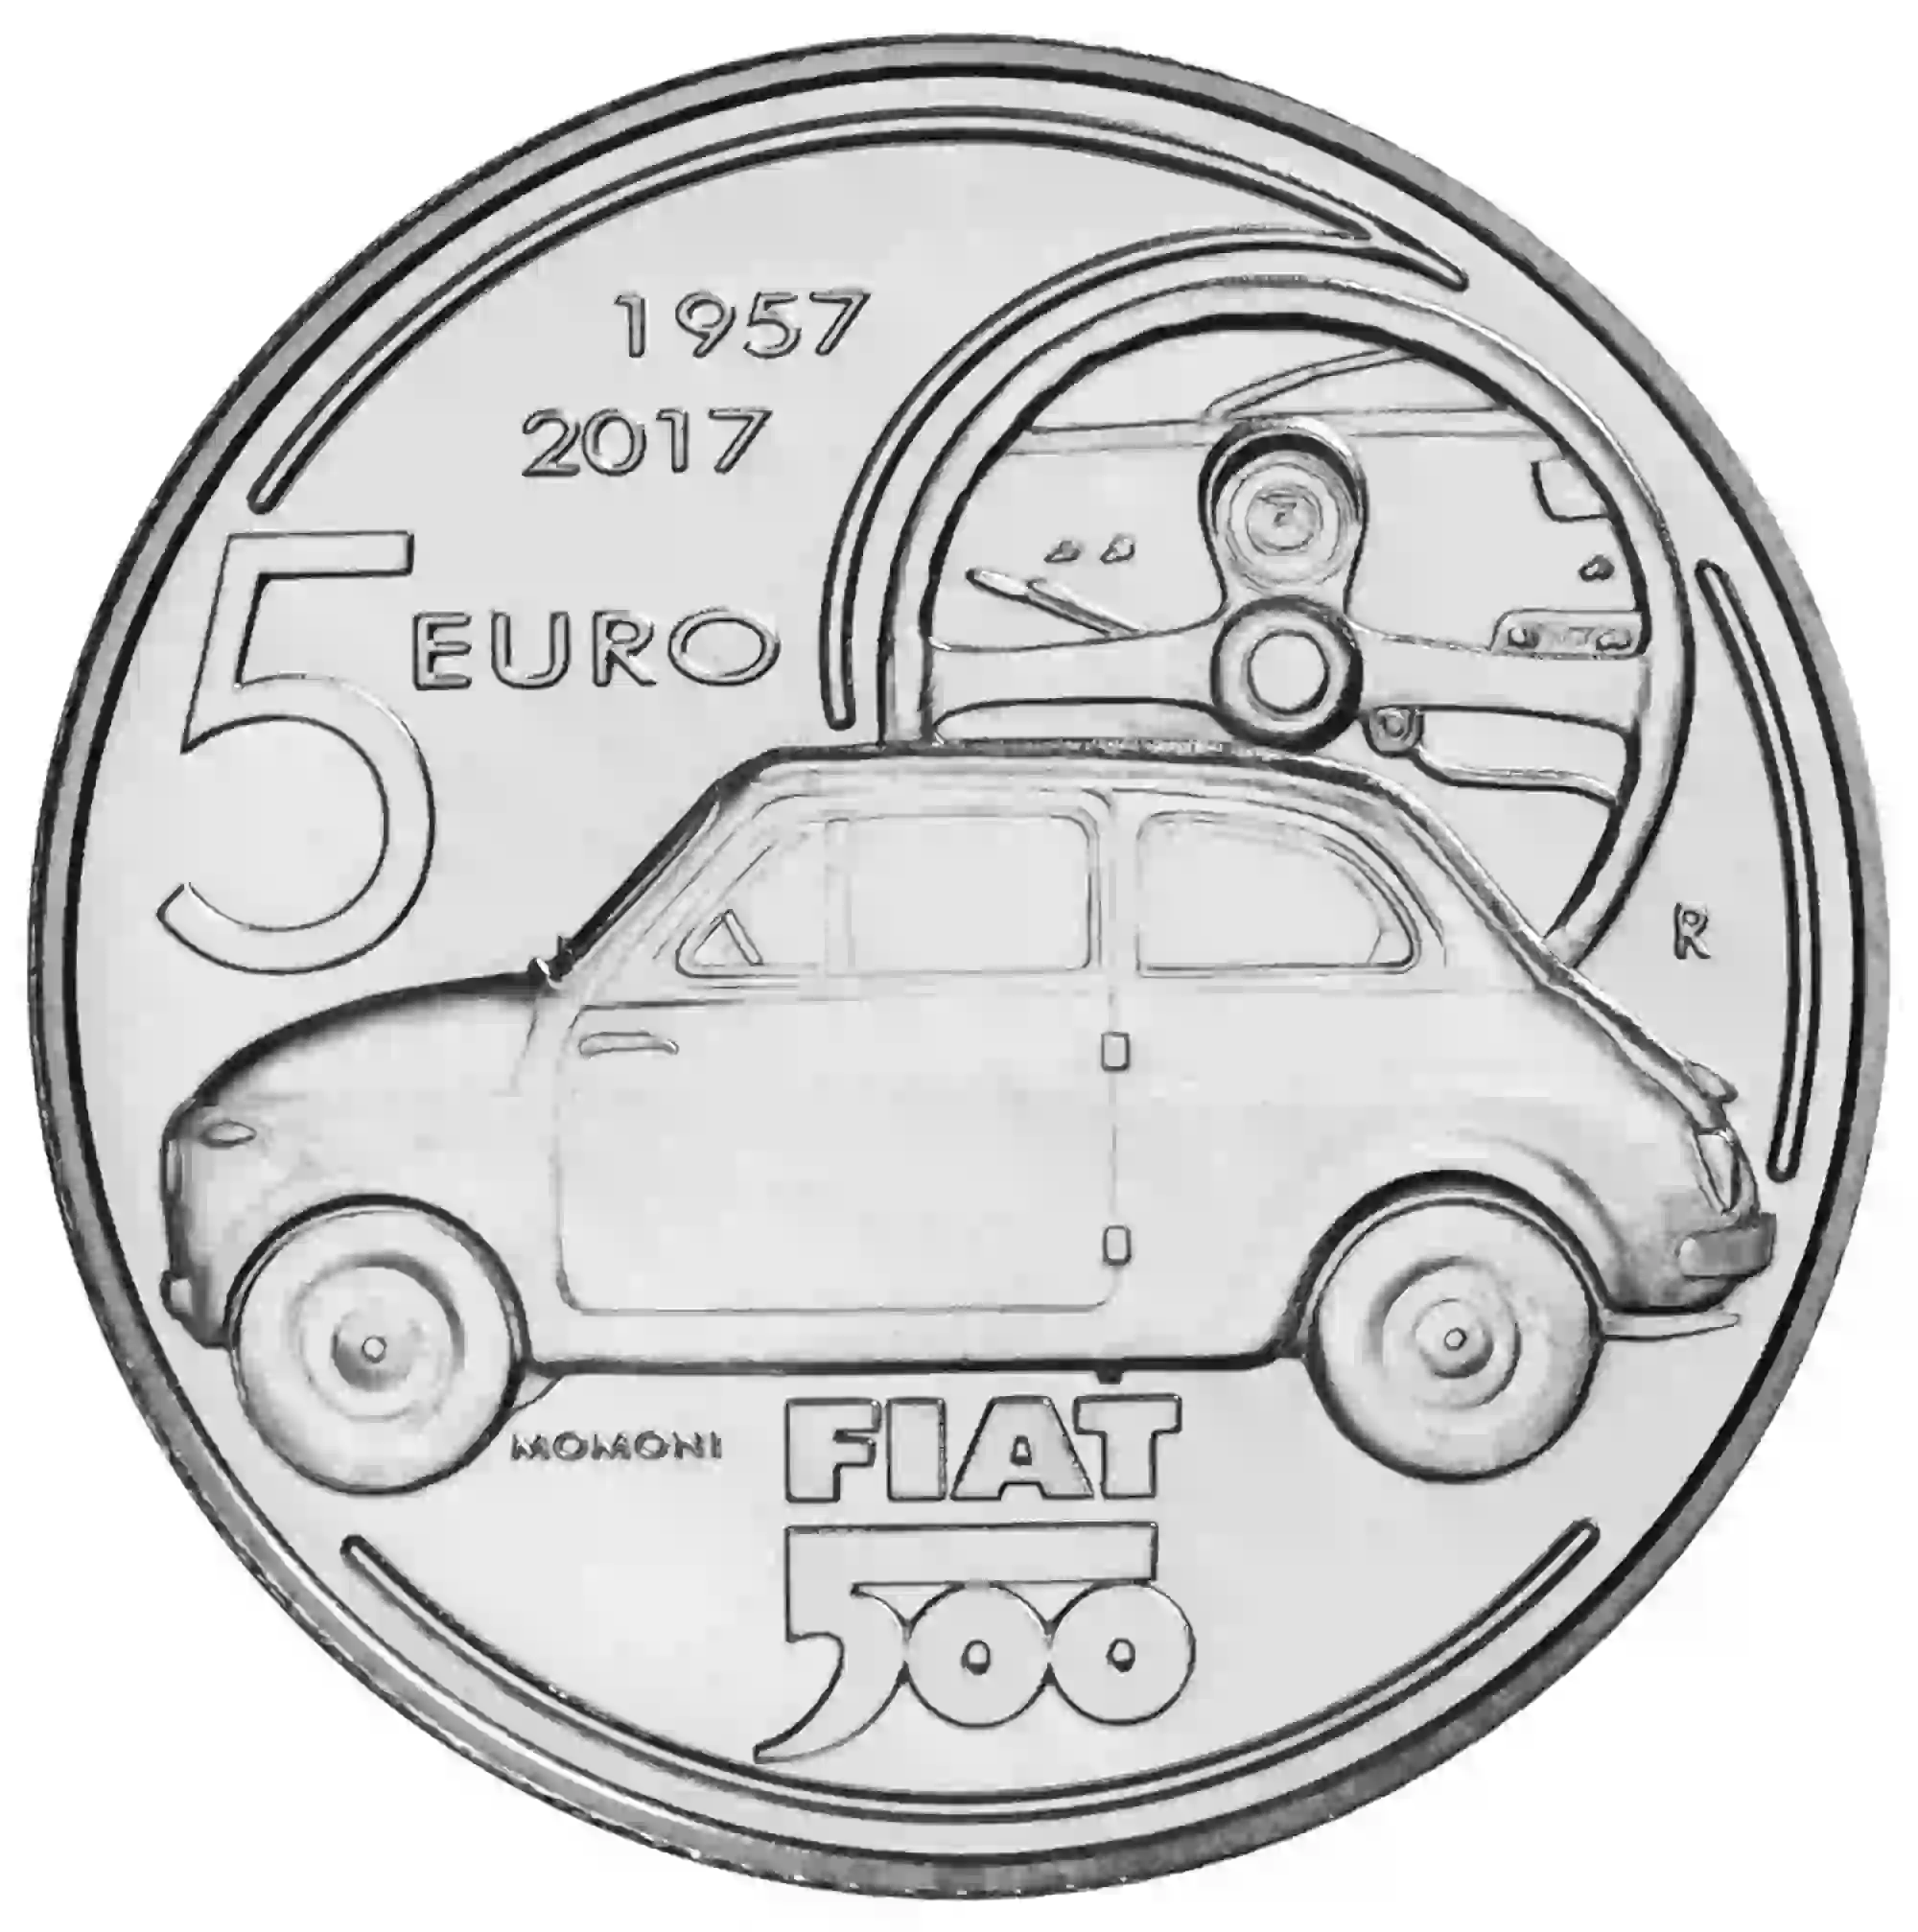 Fiat 500 moneta celebrativa - 1